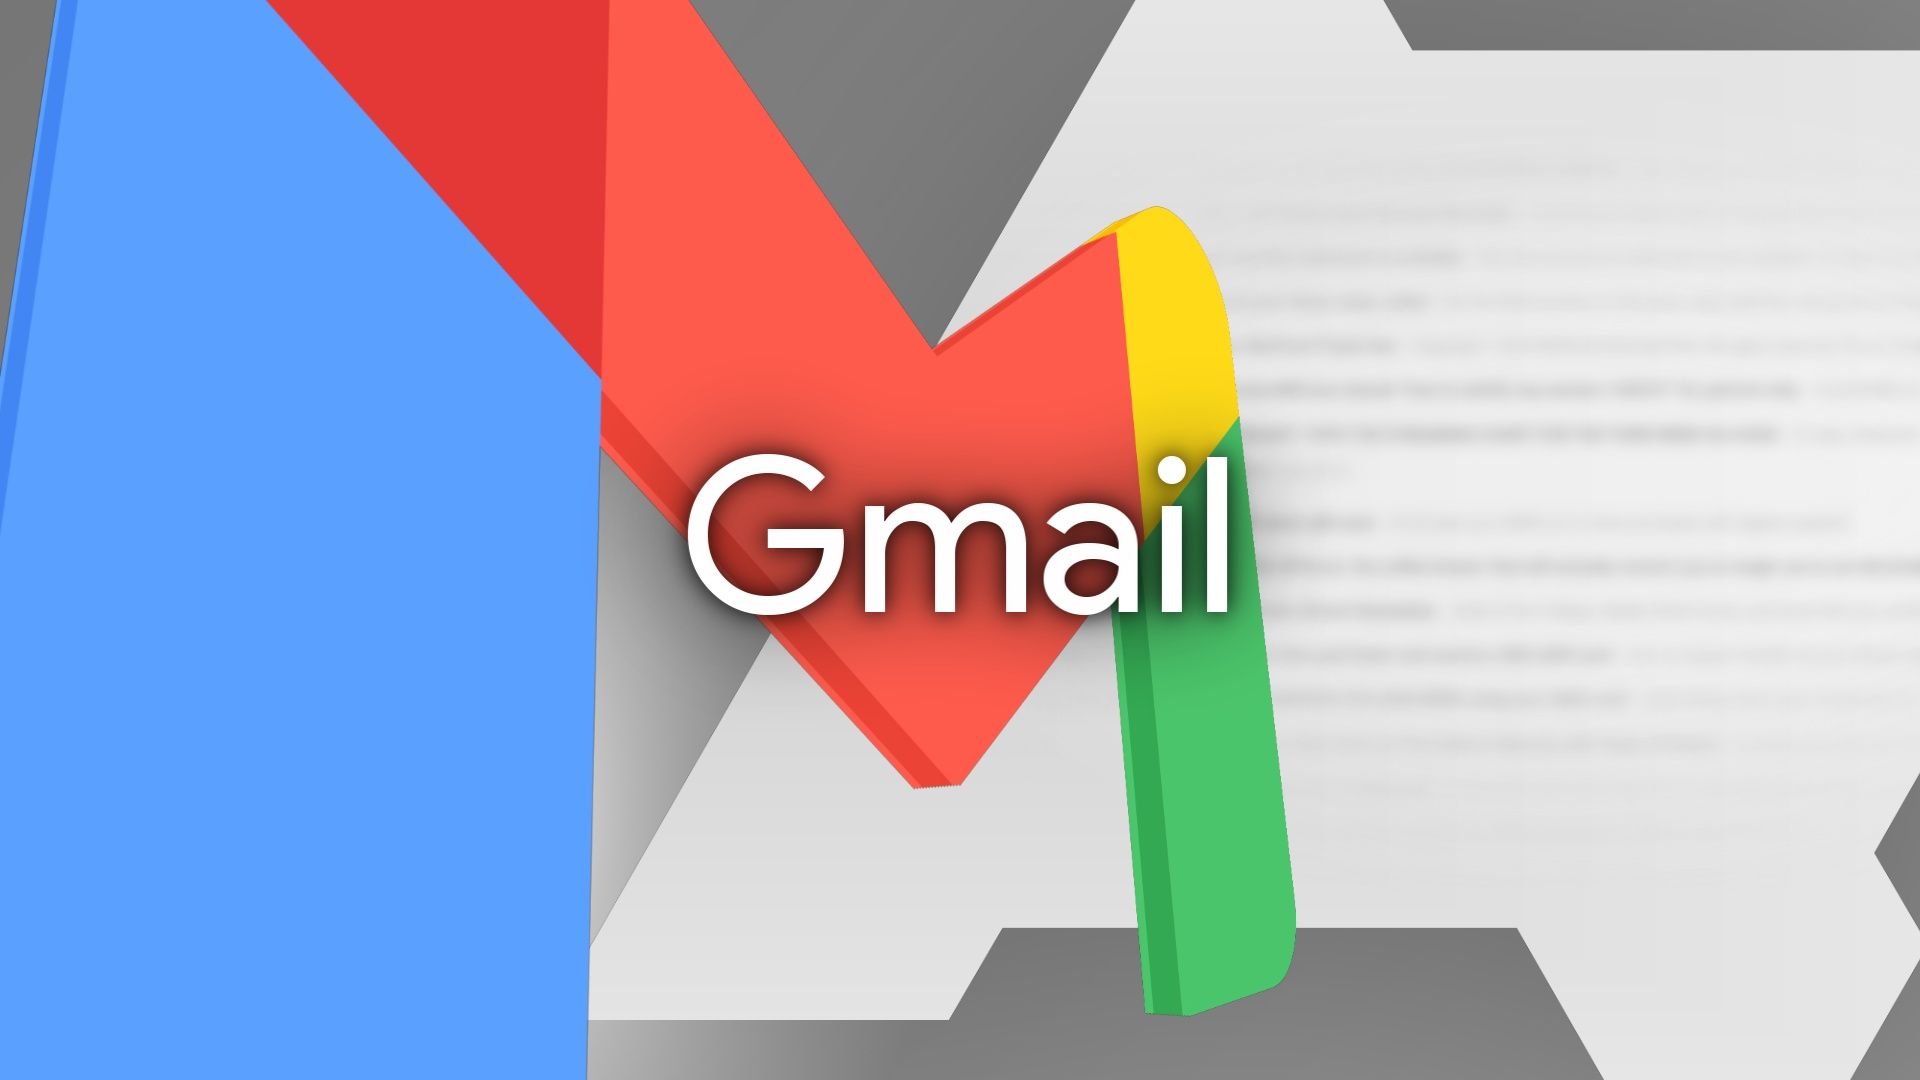 رسم توضيحي باستخدام الألوان الأساسية مع علامة Gmail وشعار Android Police خلفها.